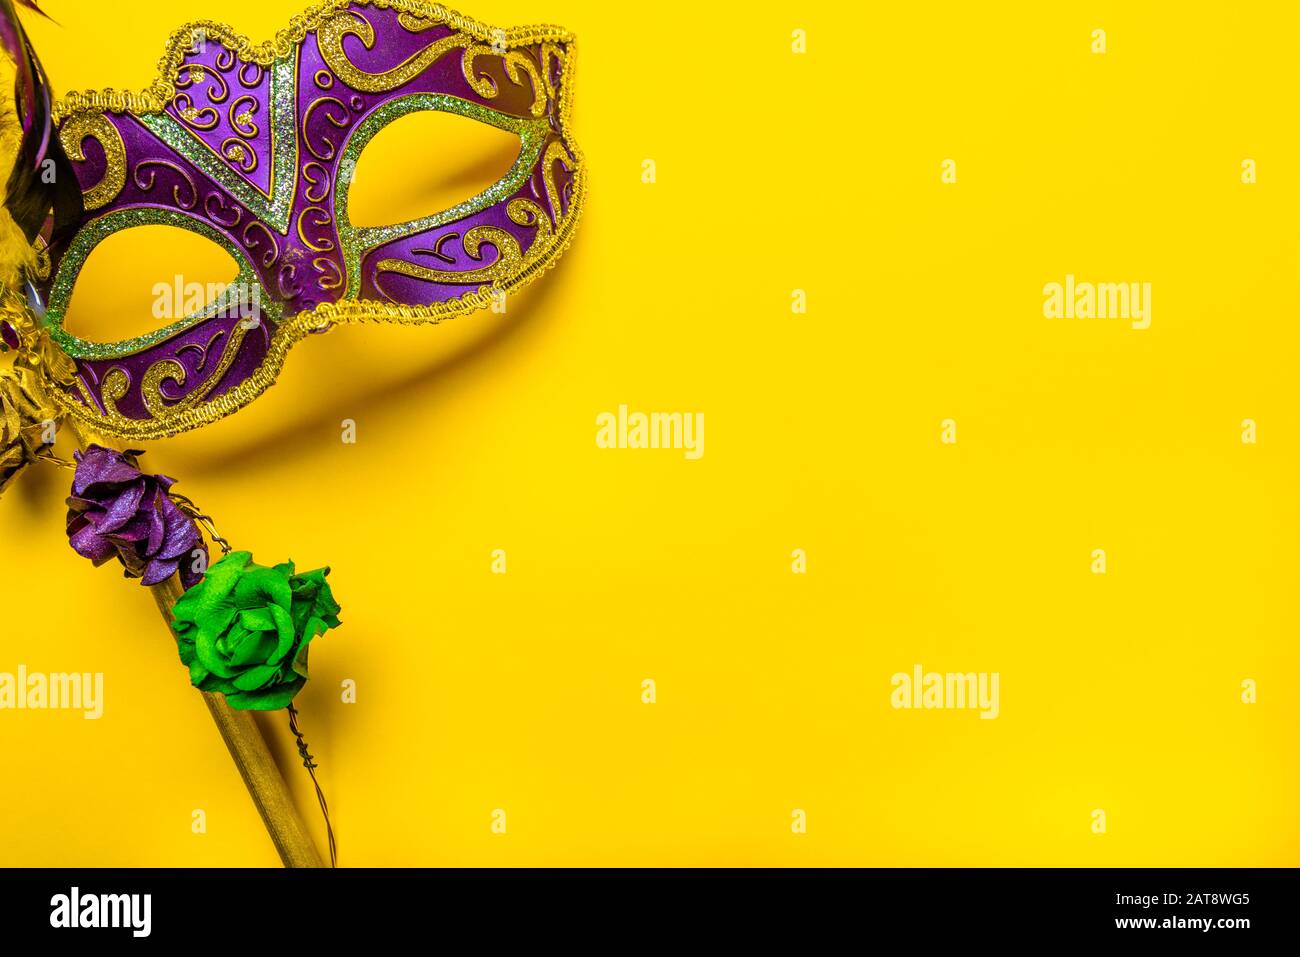 Masque Mardi gras sur fond jaune vif Banque D'Images